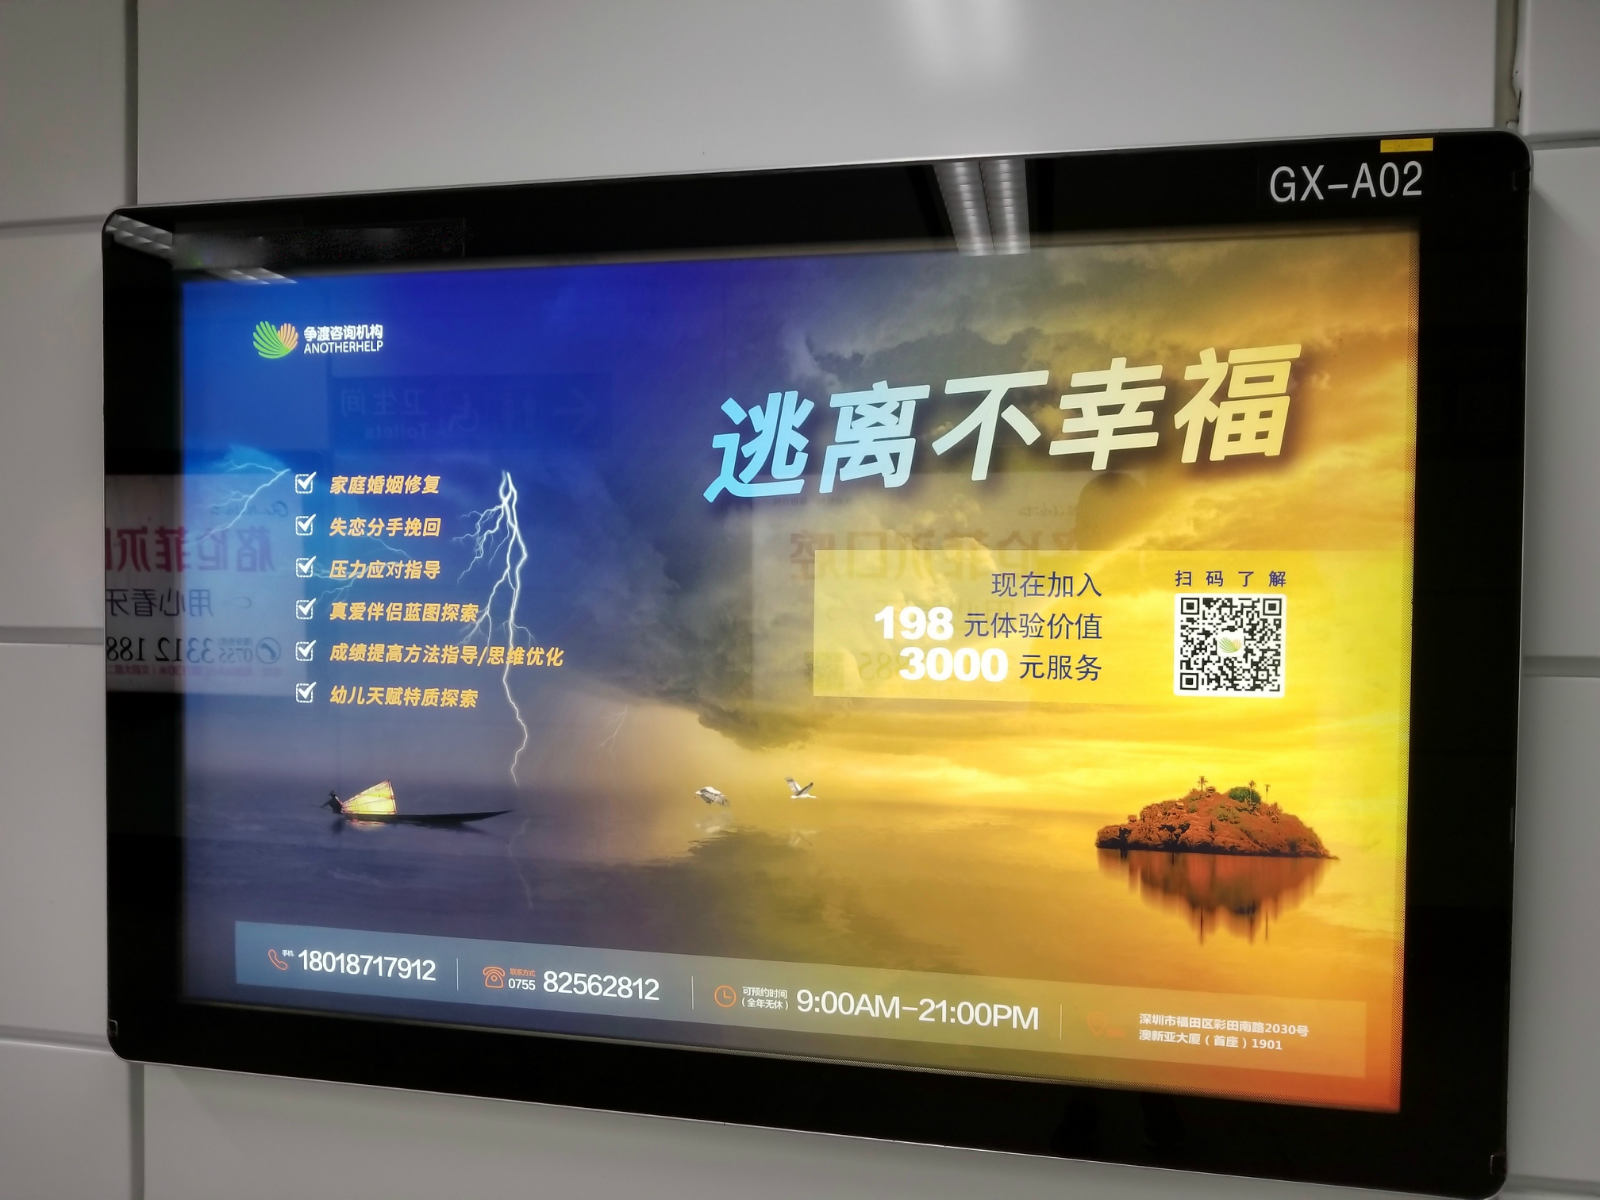 如何策划一场引人注目深圳地铁广告营销文案